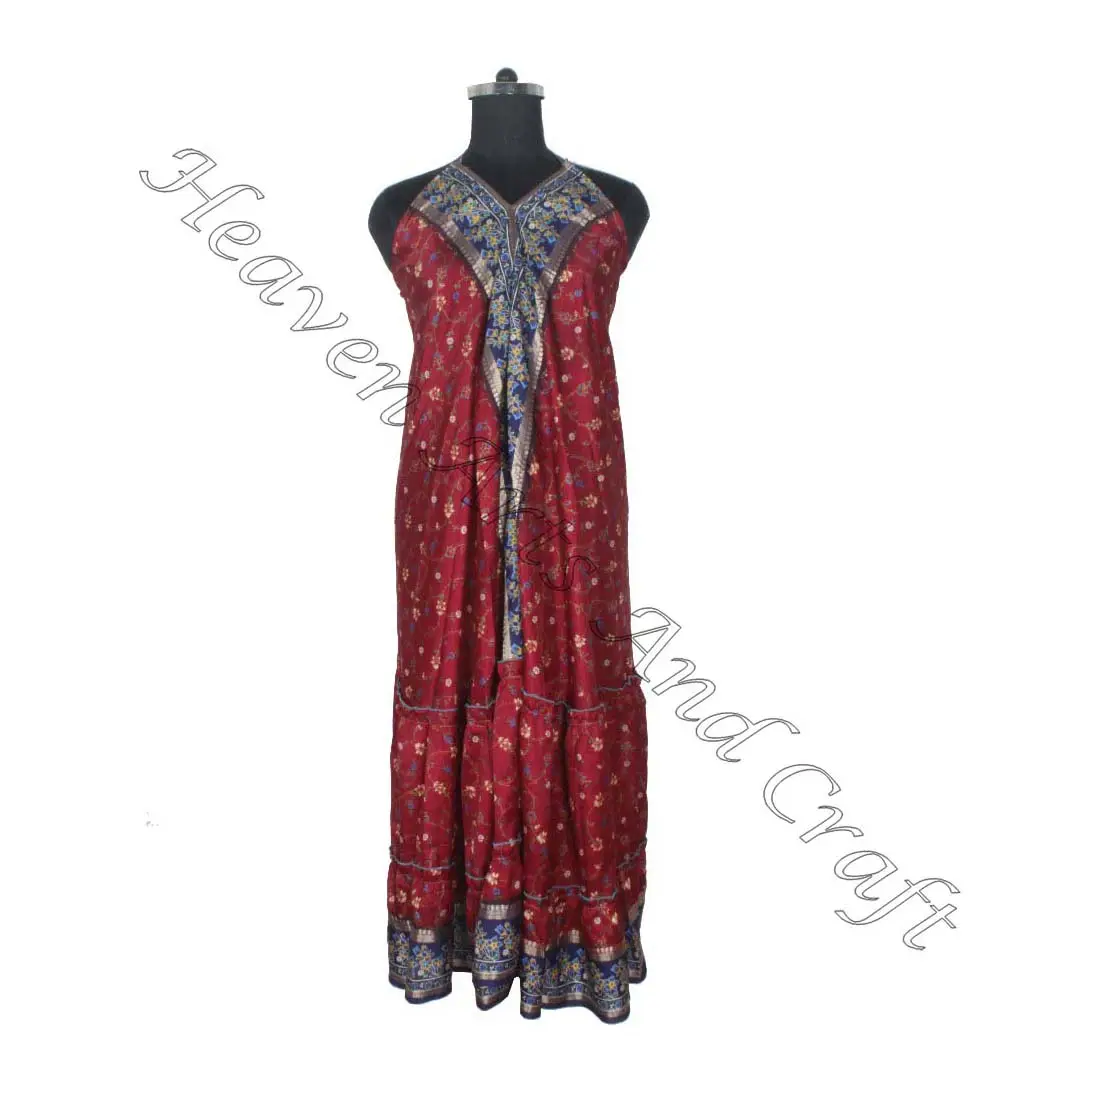 SD018 الساري / الساري / شري ملابس هندية وباكستانية من الهند هيبي بوهو مصنع وصانع ملابس النساء الساري الكلاسيكي